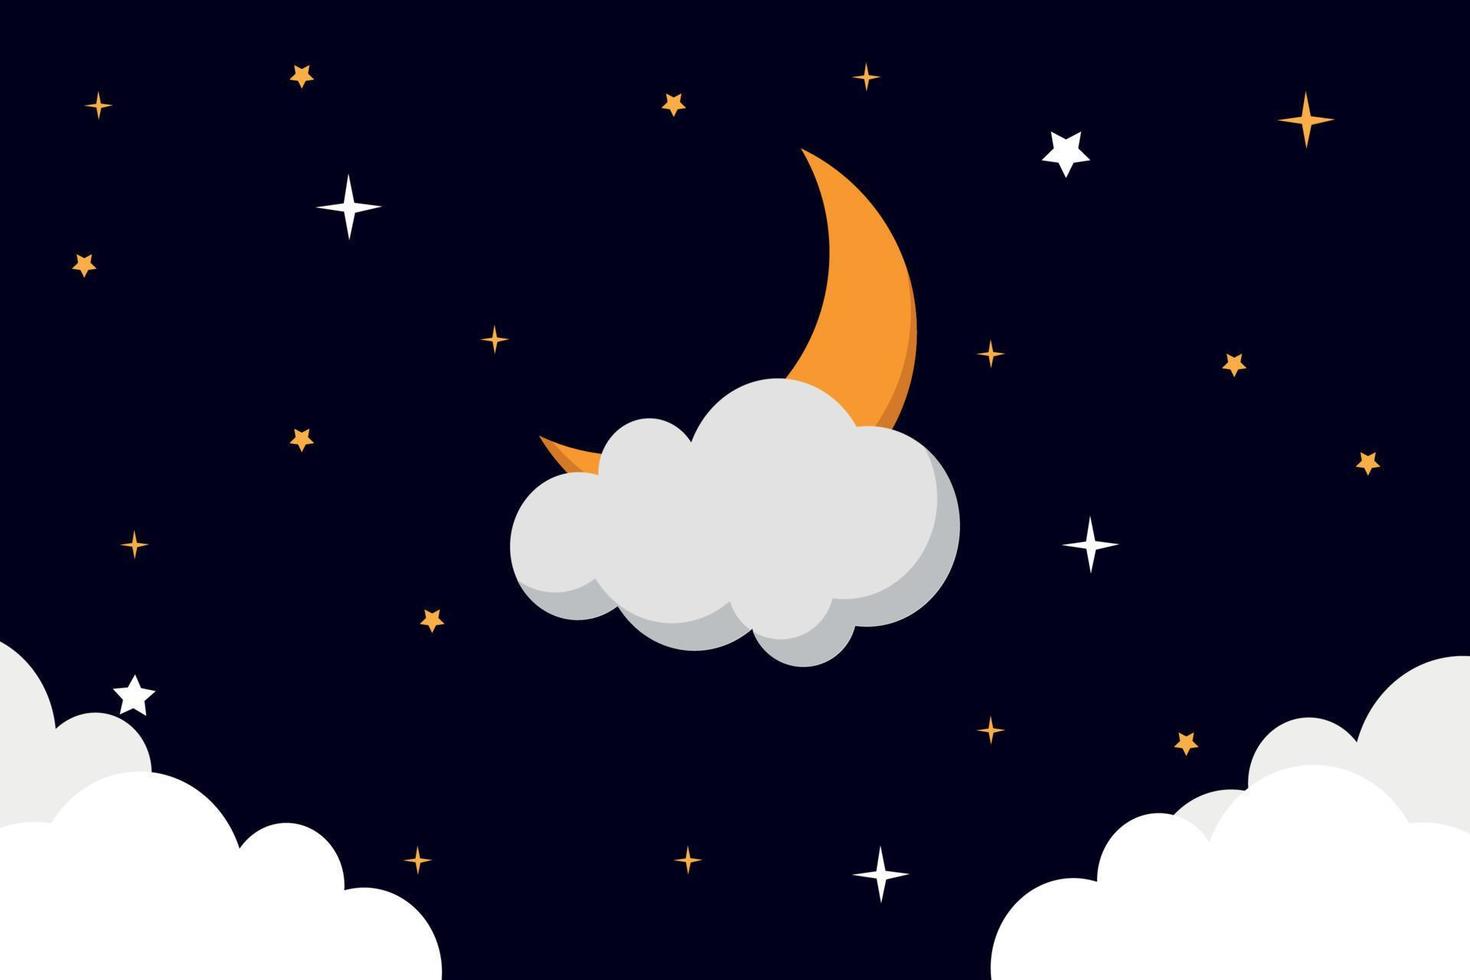 halvmåne måne täckt med moln i de natt himmel. vektor natt himmel bakgrund stjärnor och måne. halvmåne måne med moln och stjärnor i Plats